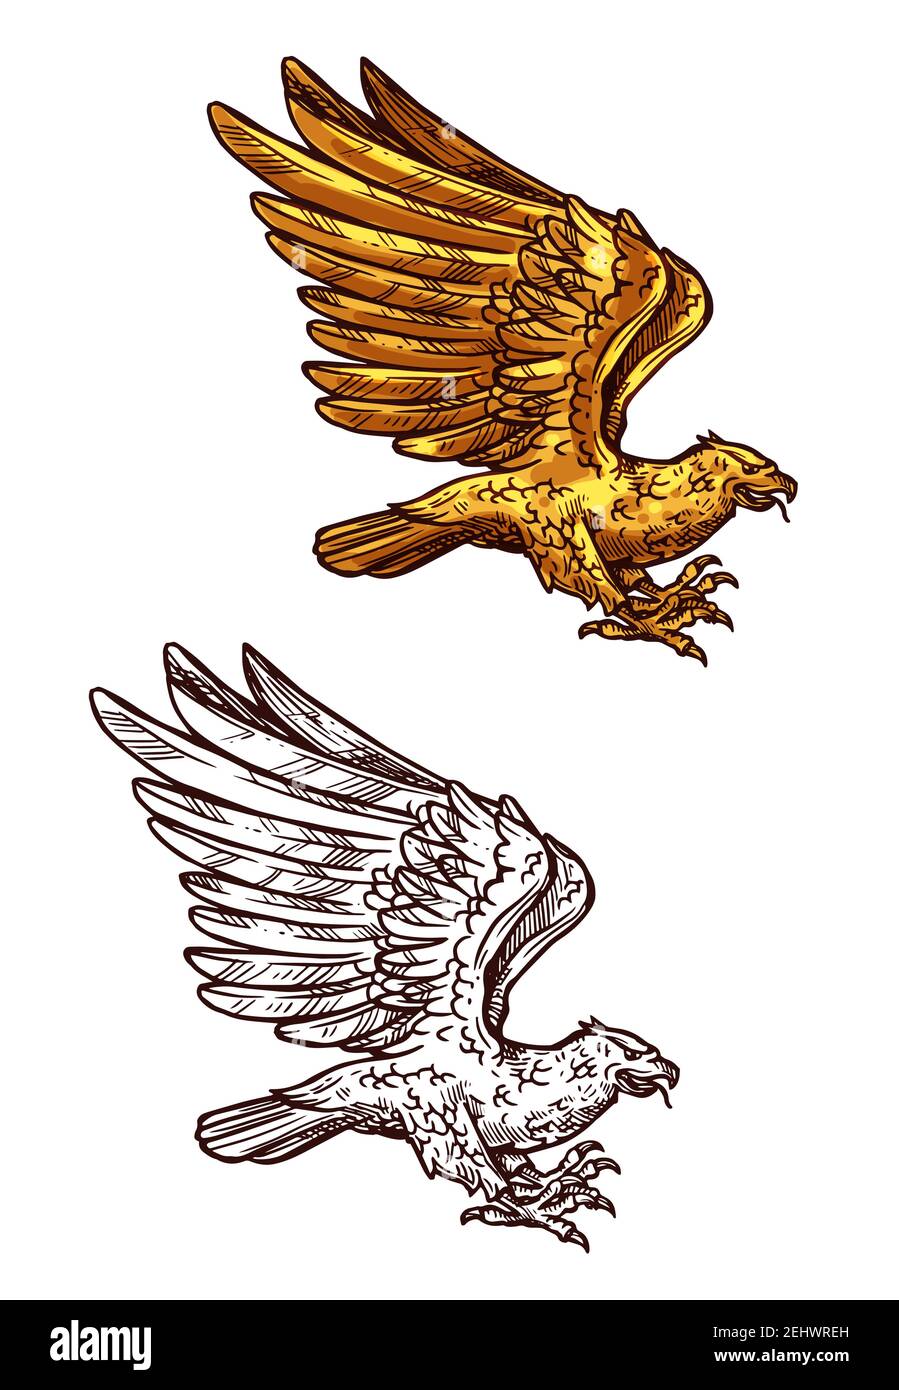 Adler, Falke, Falke oder phönix Skizze des goldenen Vogels fliegen mit erhöhten Flügeln. Falknerjagd Emblem, vintage Royal heraldry Element oder Tattoo vecto Stock Vektor